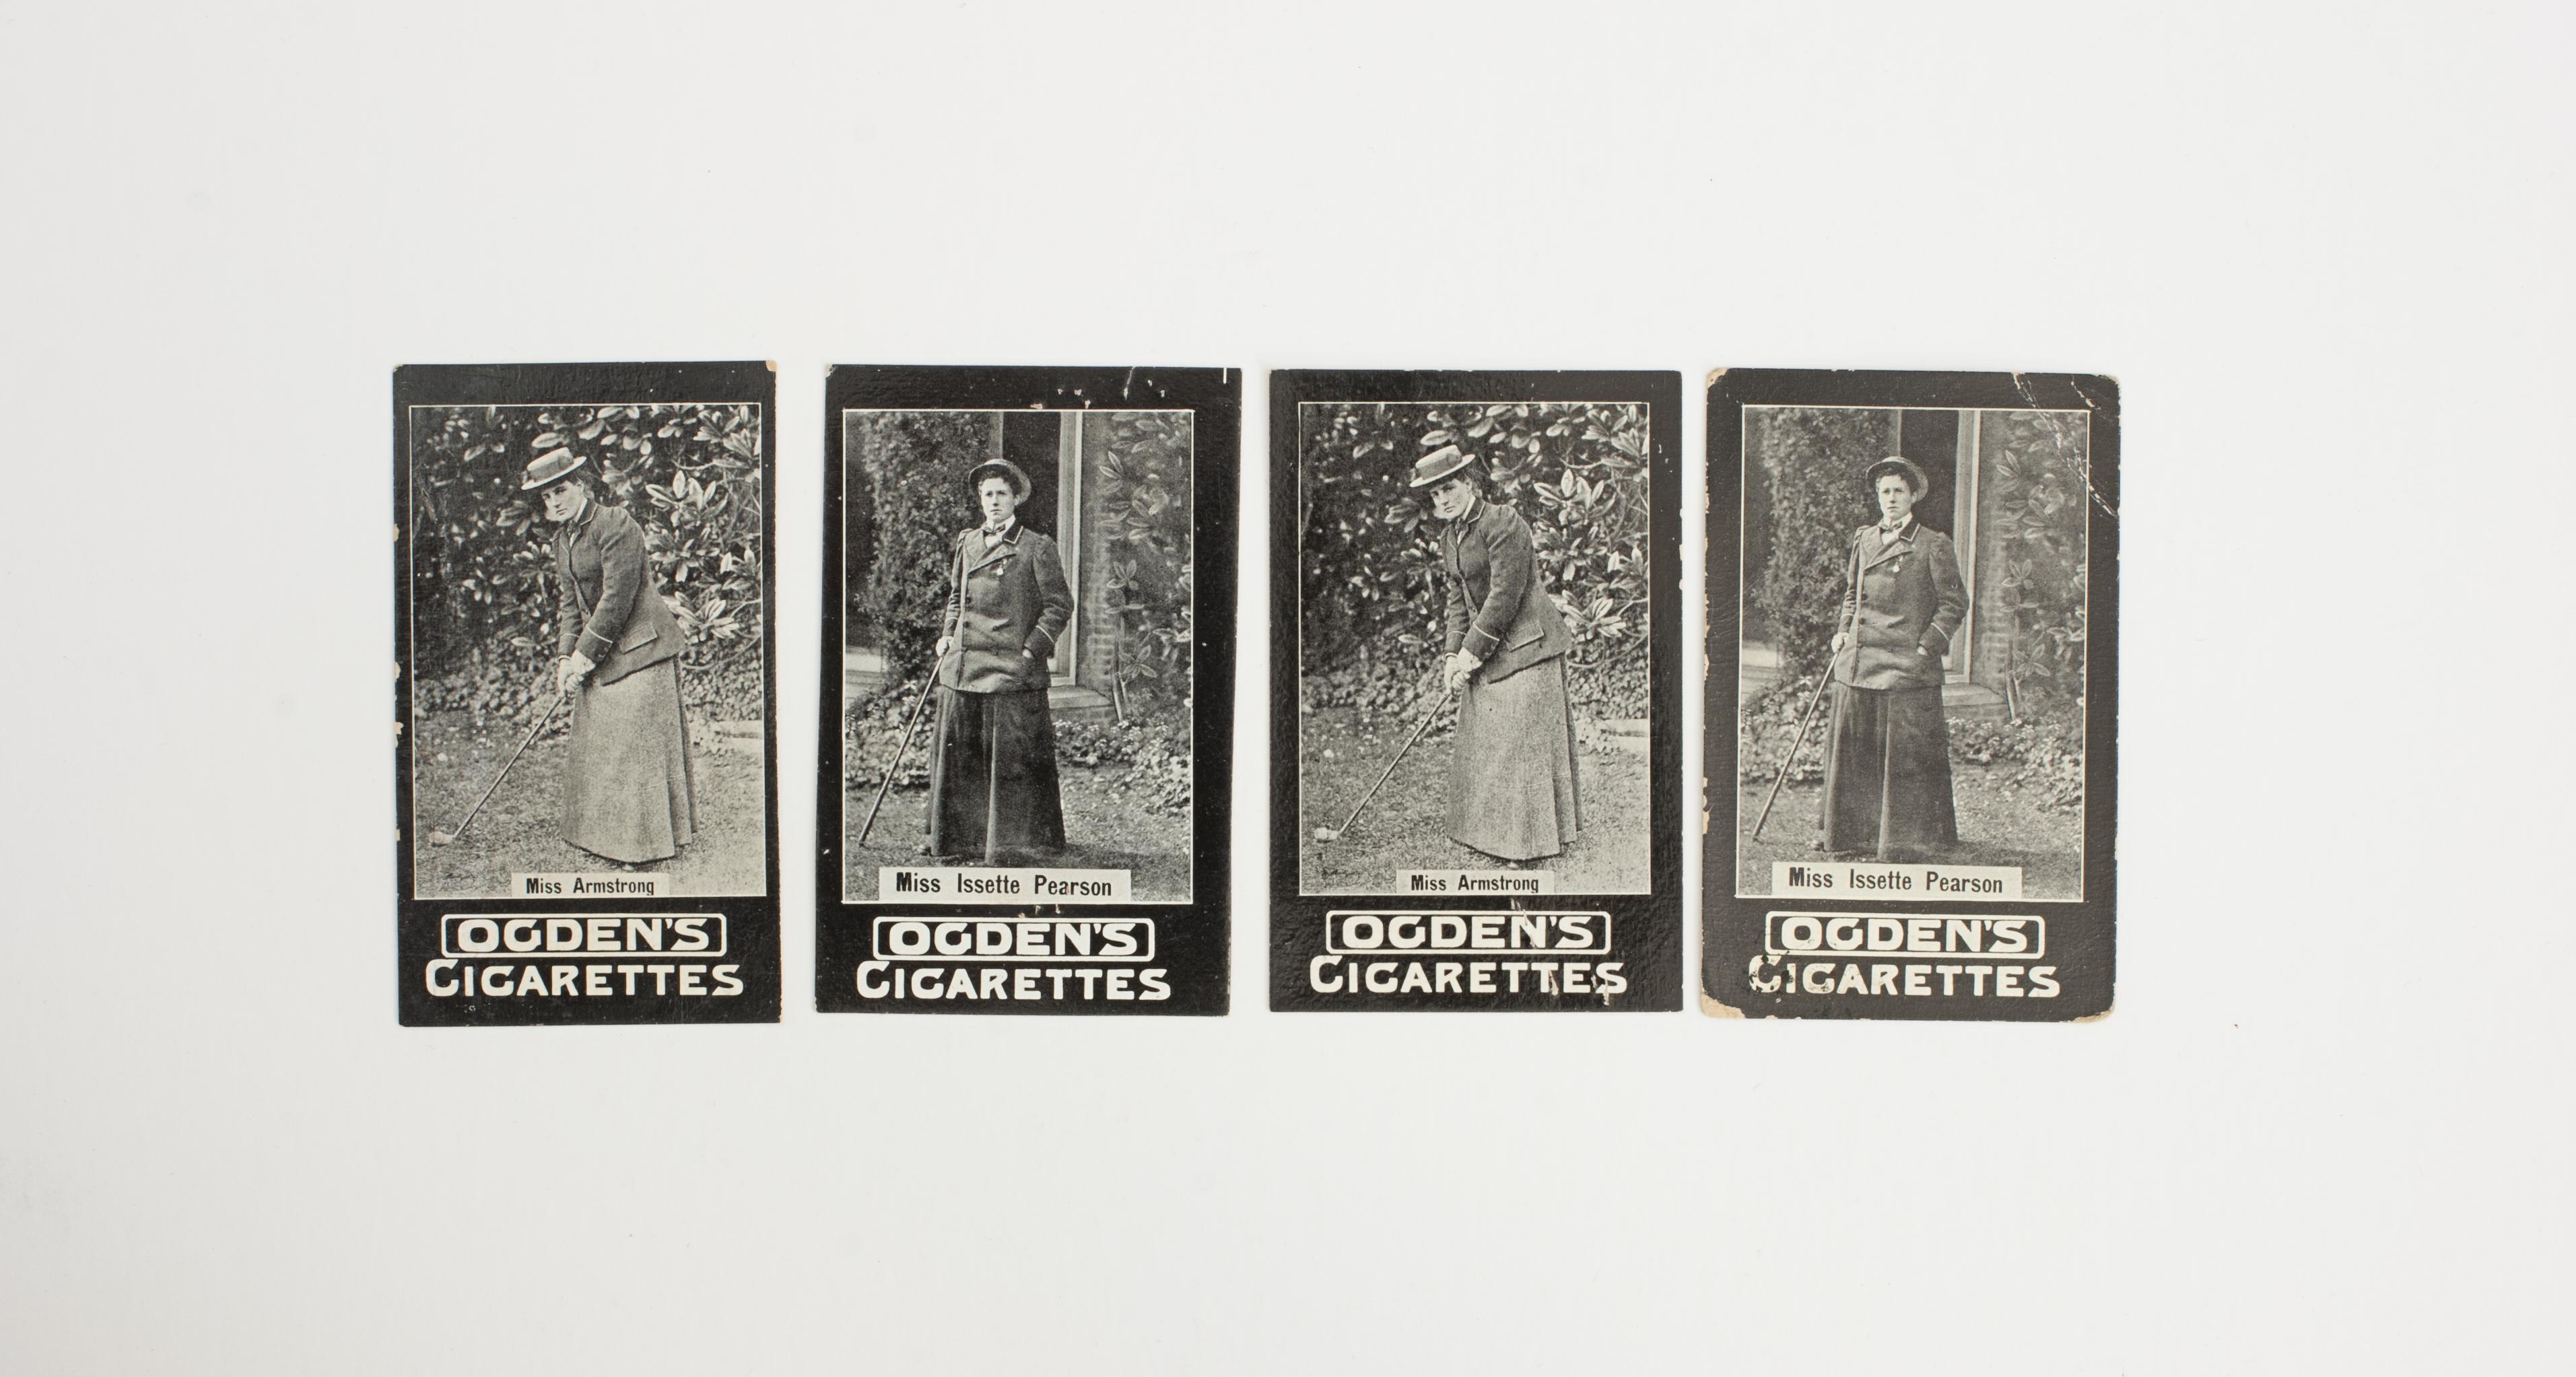 Cartes à cigarettes Ogden Tab de golfeuses.
Les quatre cartes Ogden Tab Cigarette représentent deux golfeuses, Mlle Issette Pearson et Mlle Armstrong. Les cartes de cigarettes de Whiting sont dotées de bordures noires distinctives, d'une impression